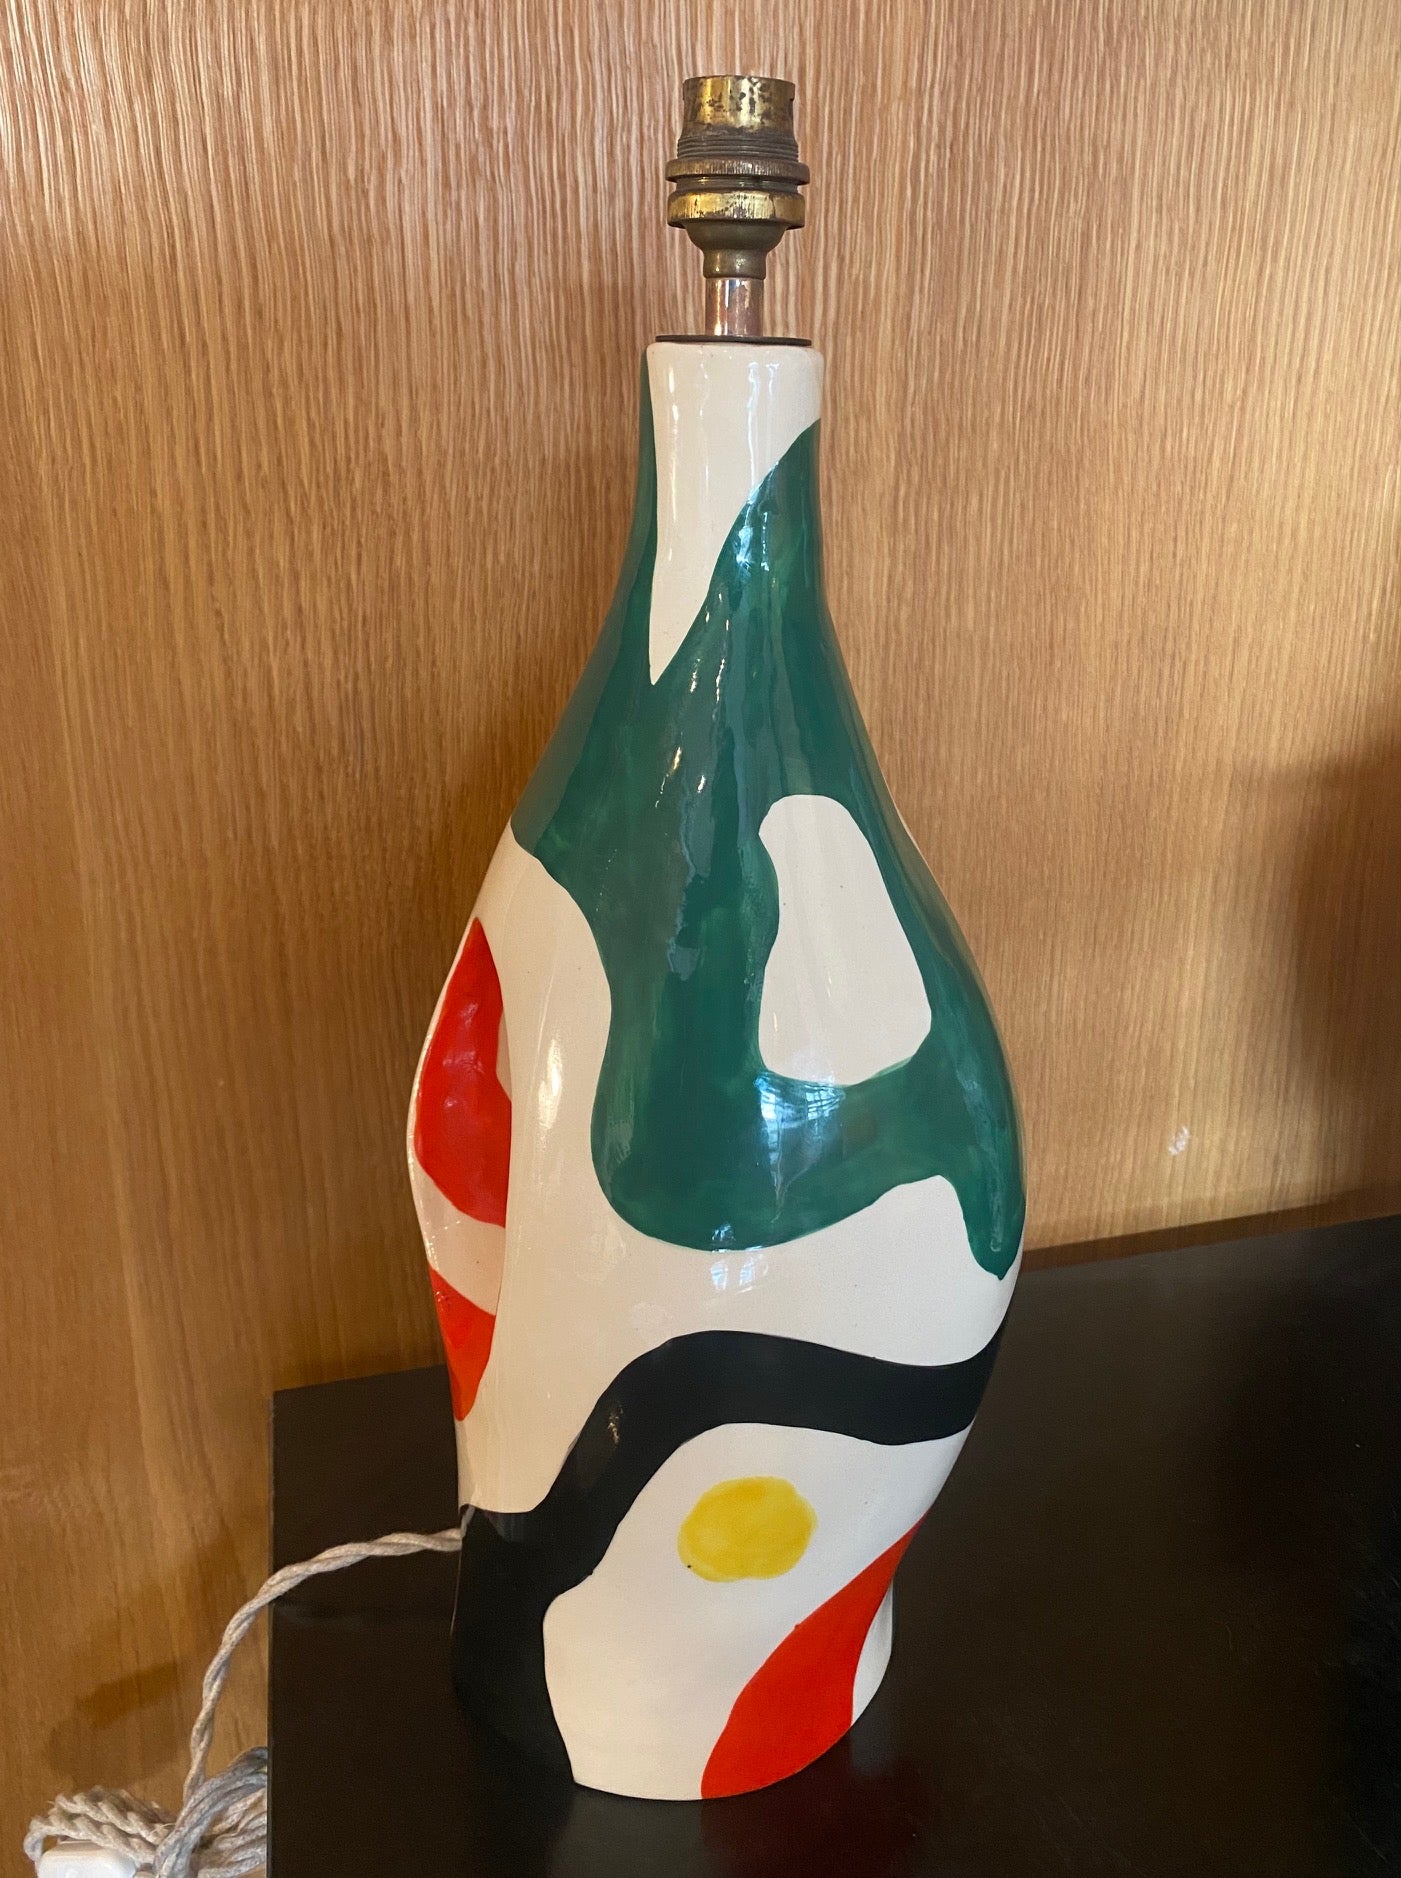 Lampe de bureau en céramique de Roland Brice, Biot, France
Roland Brice a travaillé à Biot, dans le sud de la France, près de Vallauris et d'Antibes, de 1949 jusqu'à sa mort en 1989. Il a été un proche collaborateur de Fernand Léger.